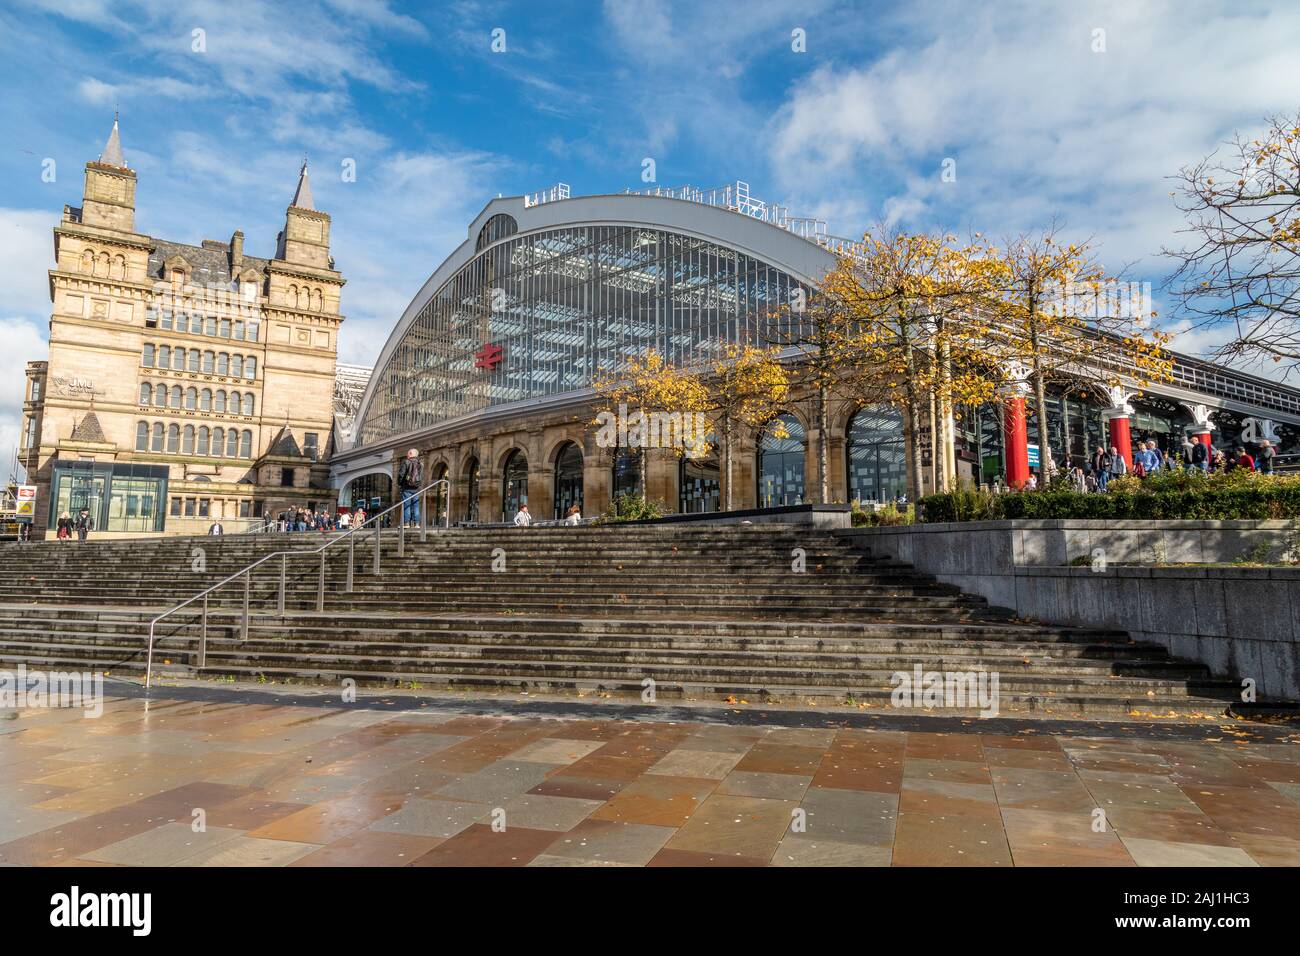 Vista frontale della stazione ferroviaria di Liverpool Lime Street nel centro di Liverpool Foto Stock